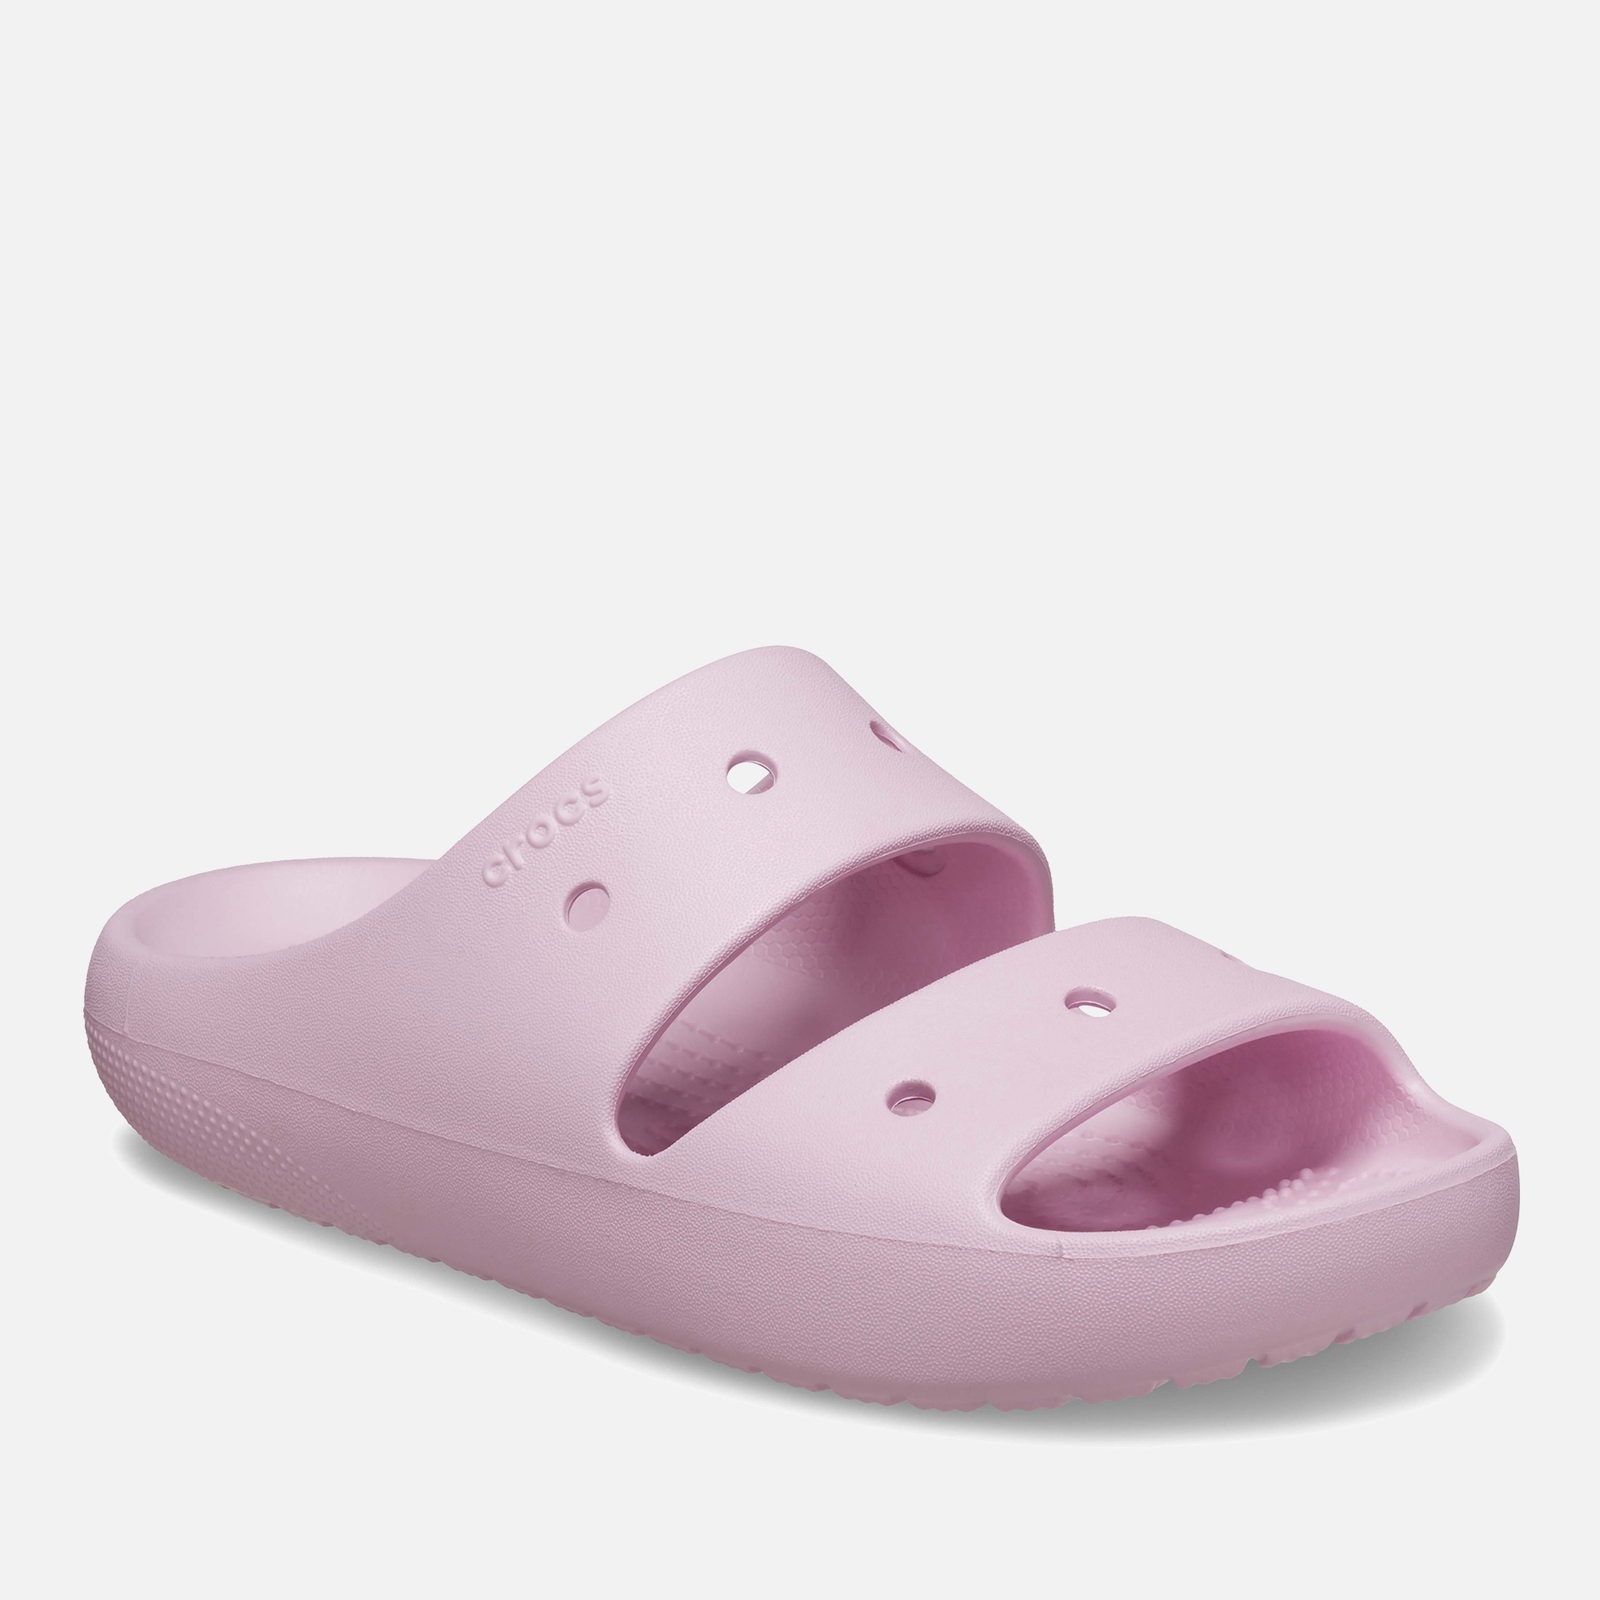 Crocs Women’s Classic Sandal